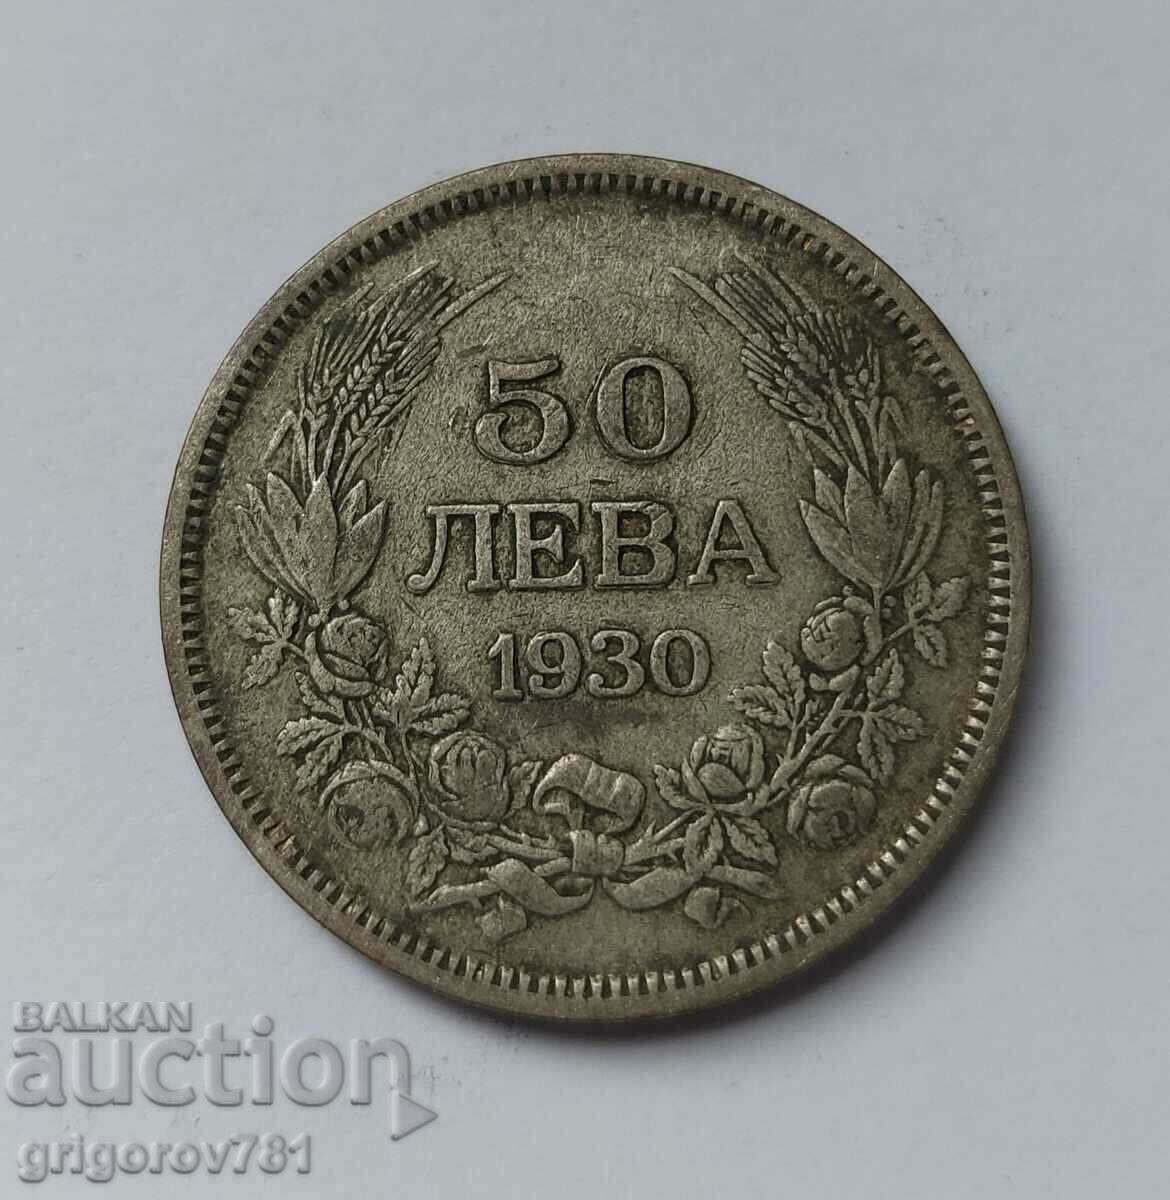 50 leva silver Bulgaria 1930 - silver coin #44